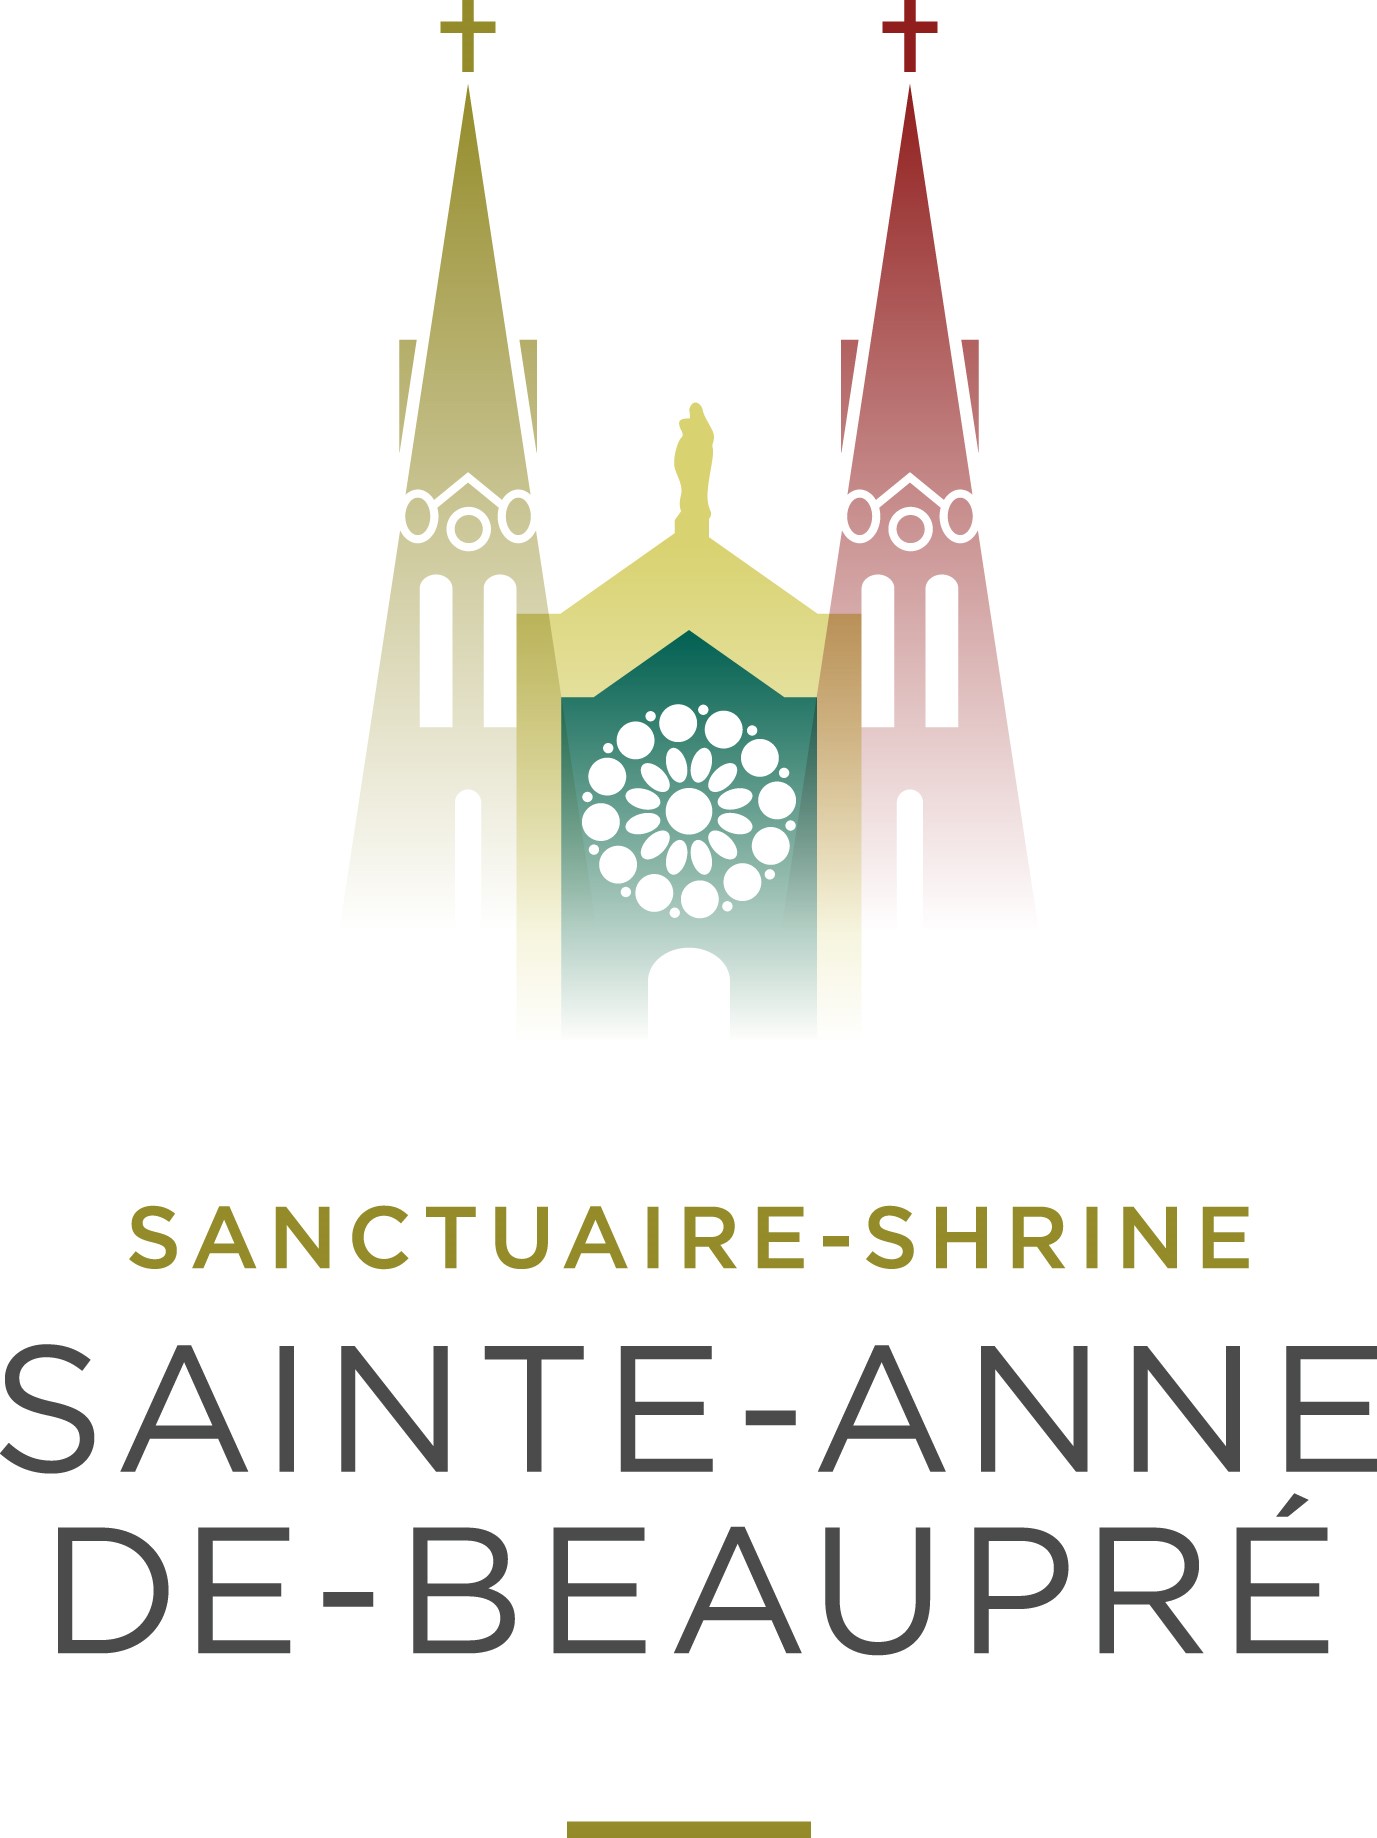 Sancturaire de Sainte-Anne-de-Beaupré